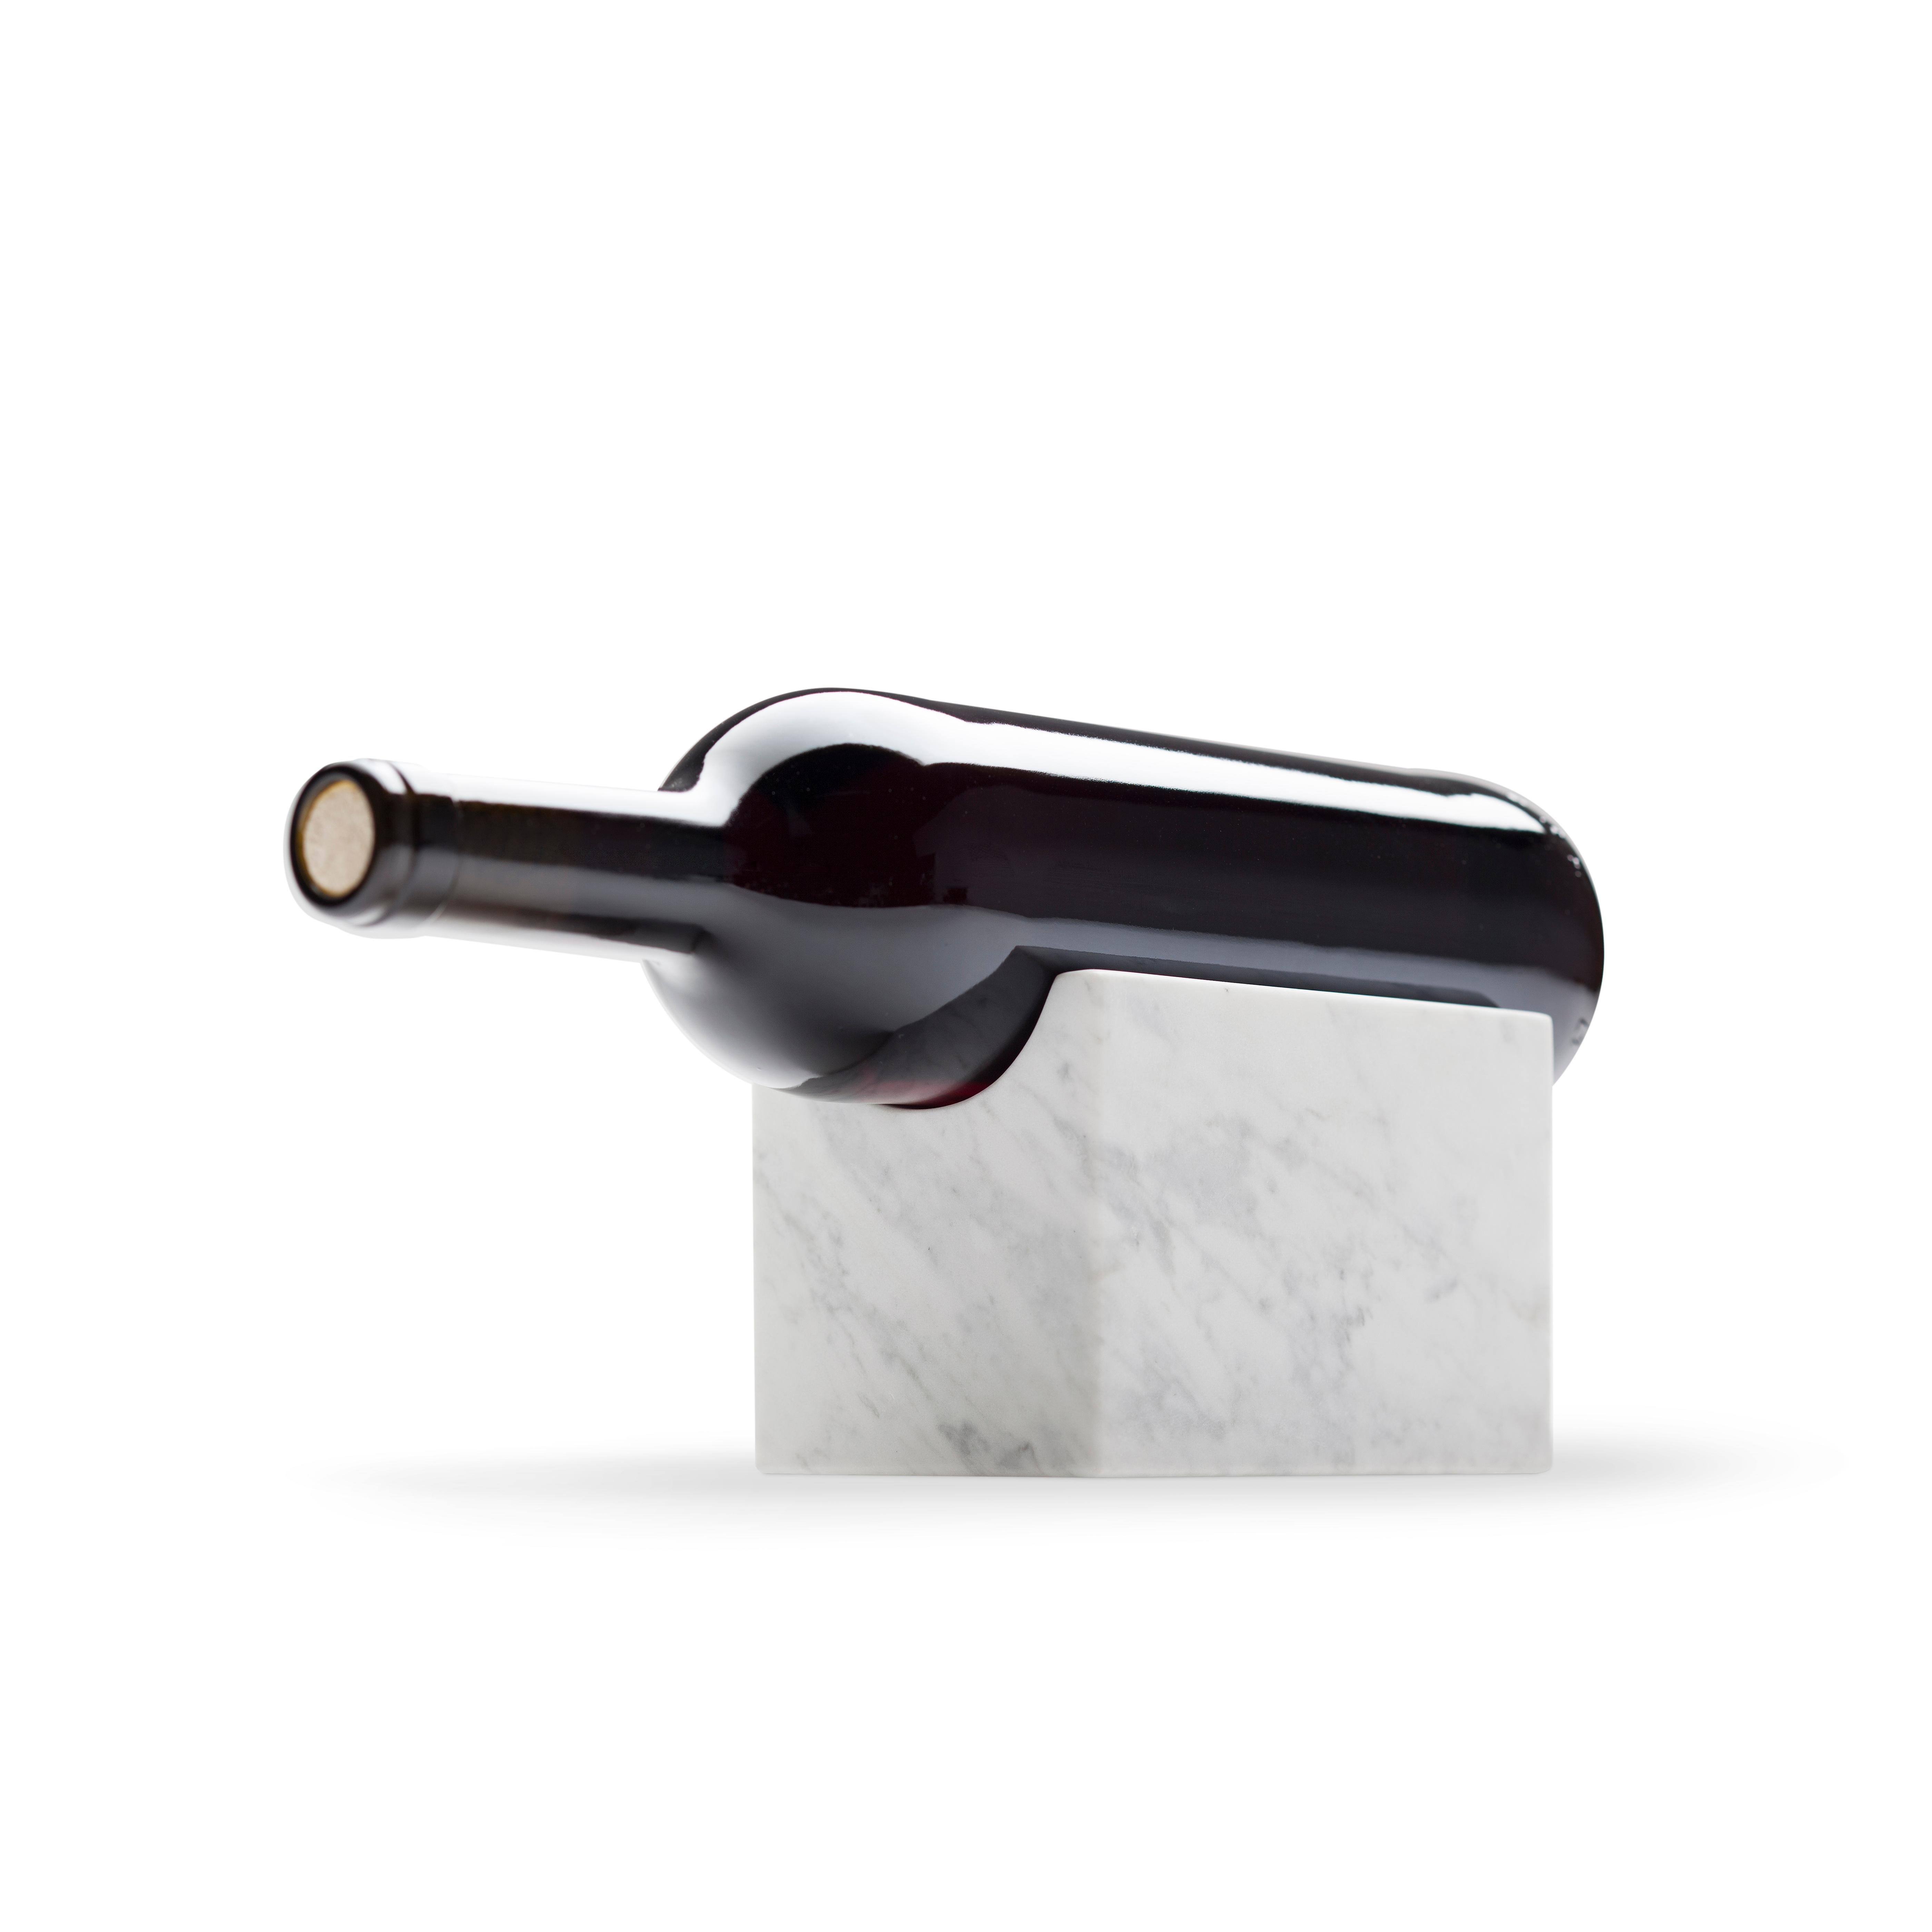 Unser Marblelous Weinhalter ist ein robustes, minimalistisches und zeitloses Stück. Eine elegante Art, einen besonderen Wein zu präsentieren. Außerdem kann das Stück Carrara-Marmor die Kälte auf die Flasche übertragen und auf diese Weise helfen, die